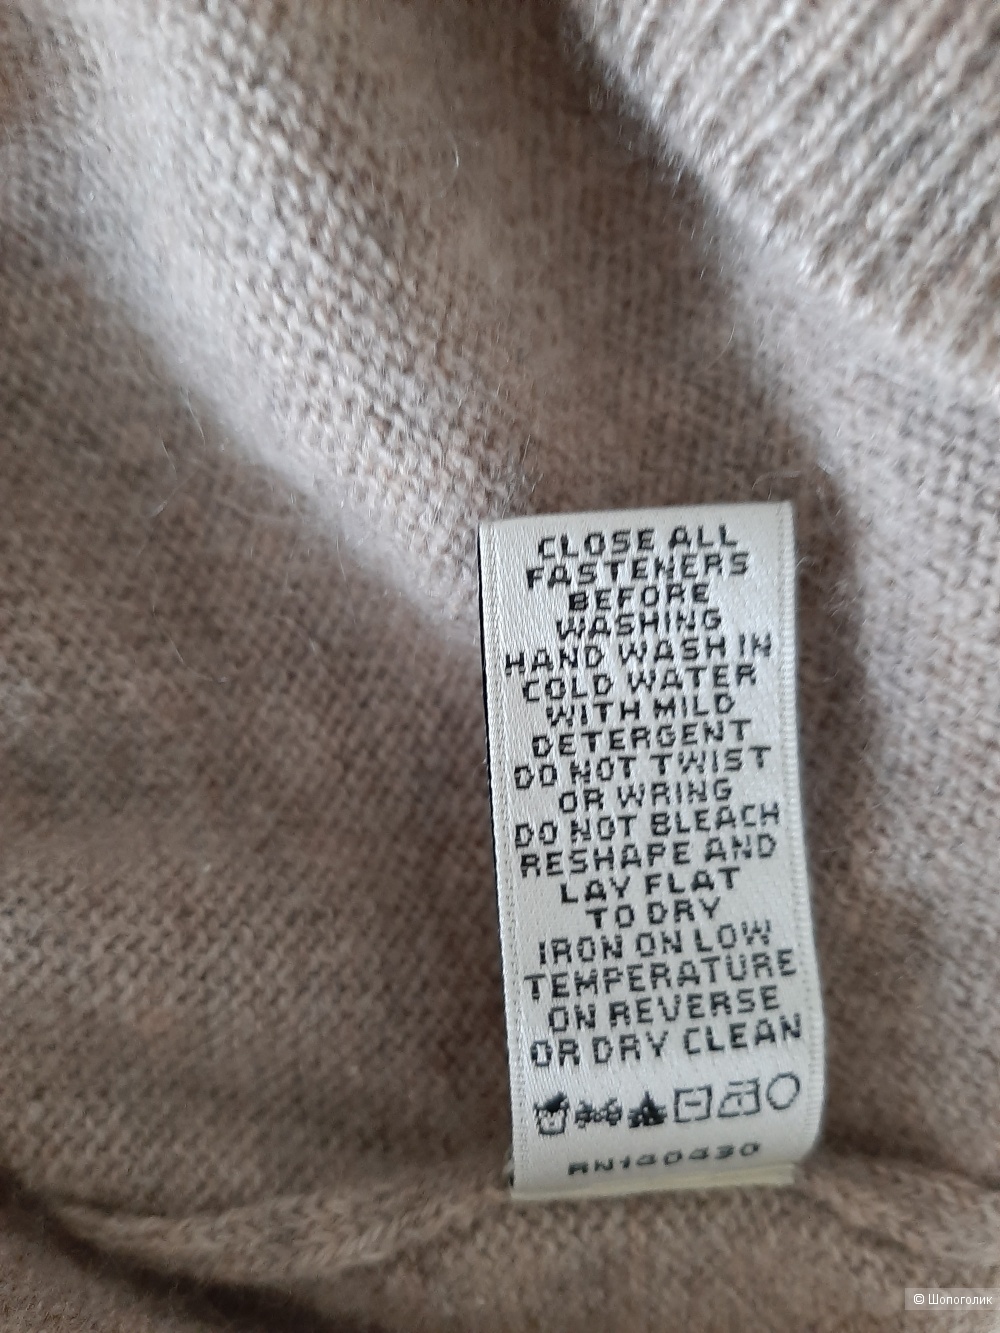 Джемпер Neiman Marcus, размер 48 рос